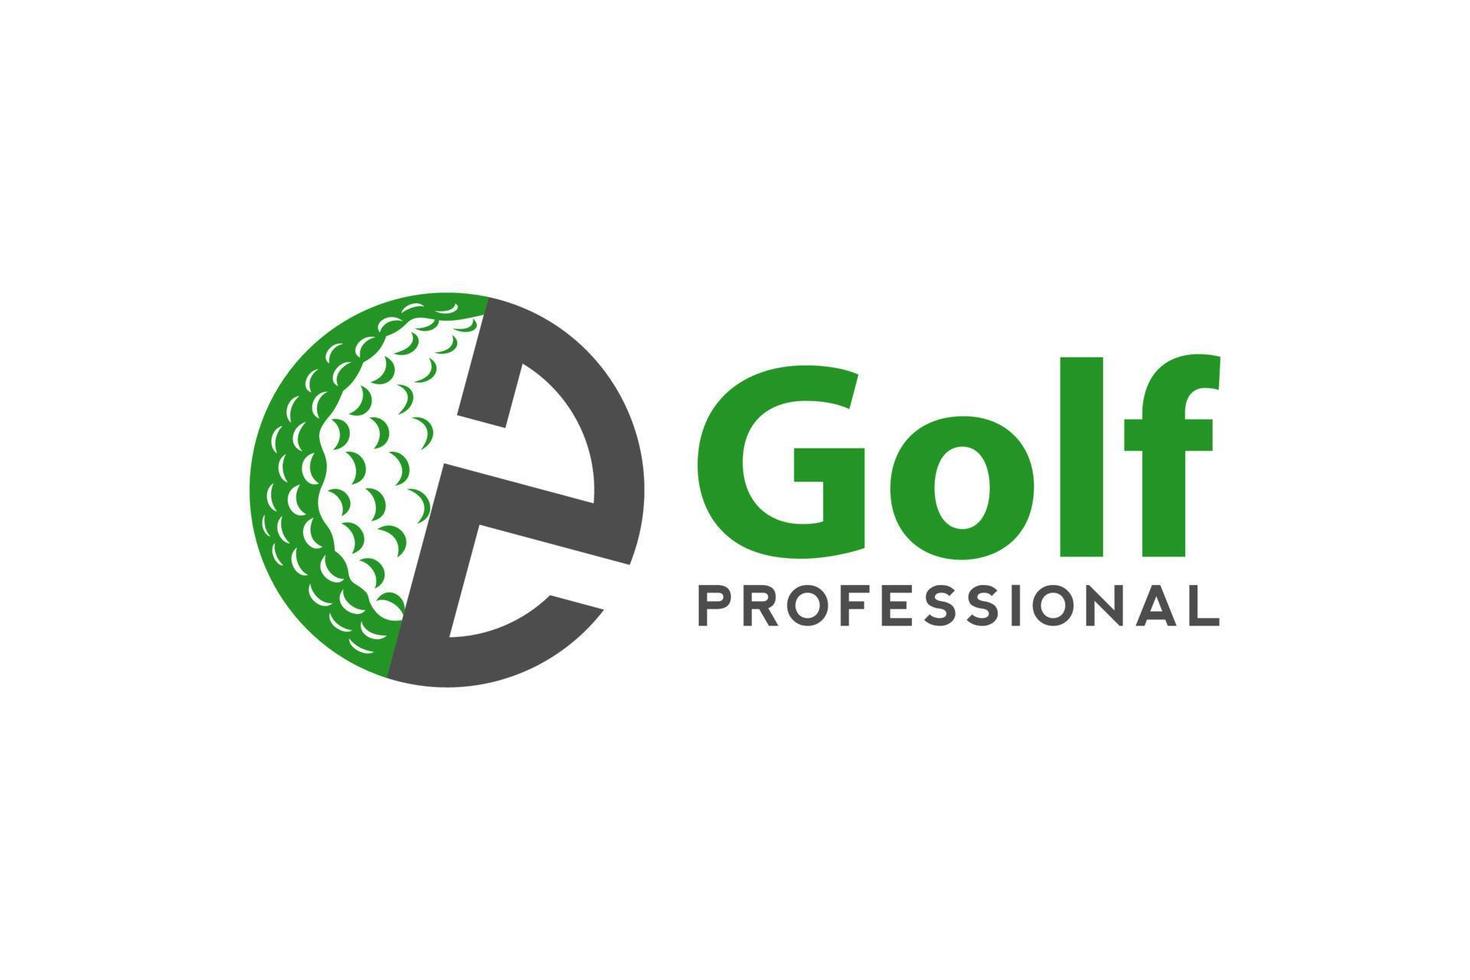 Letter Z for Golf logo design vector template, Vector label of golf, Logo of golf championship, illustration, Creative icon, design concept